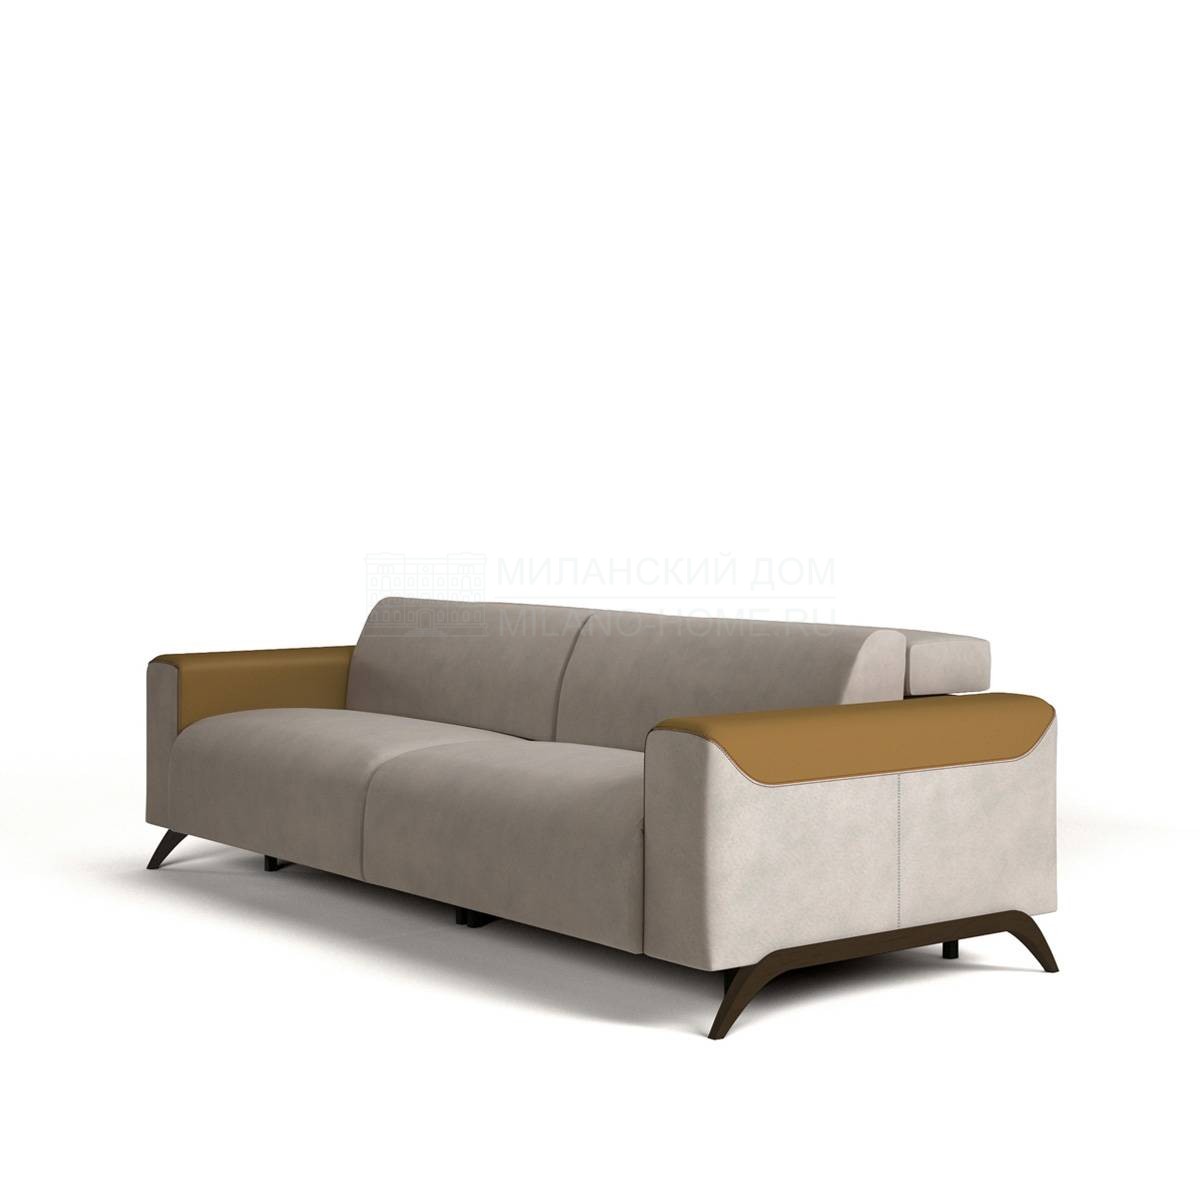 Прямой диван Atlanta sofa из Италии фабрики COLECCION ALEXANDRA